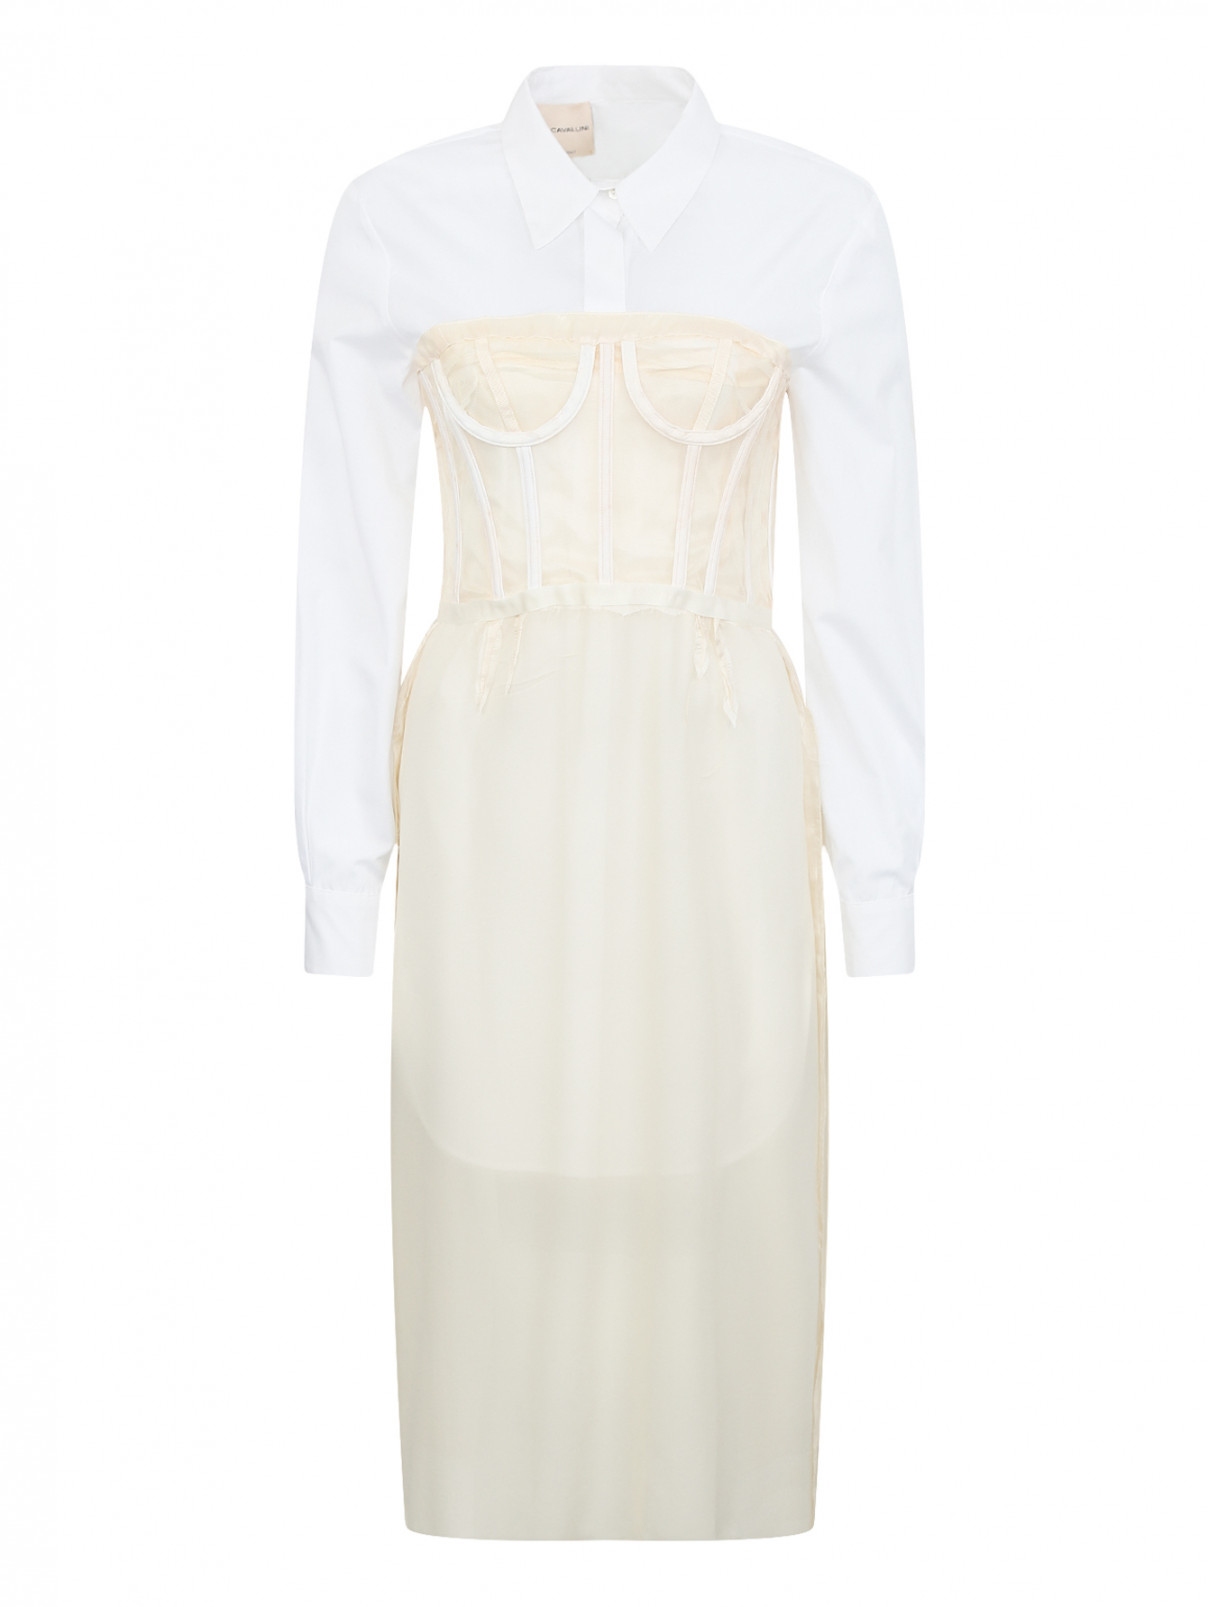 Платье из хлопка и шелка Erika Cavallini  –  Общий вид  – Цвет:  Белый